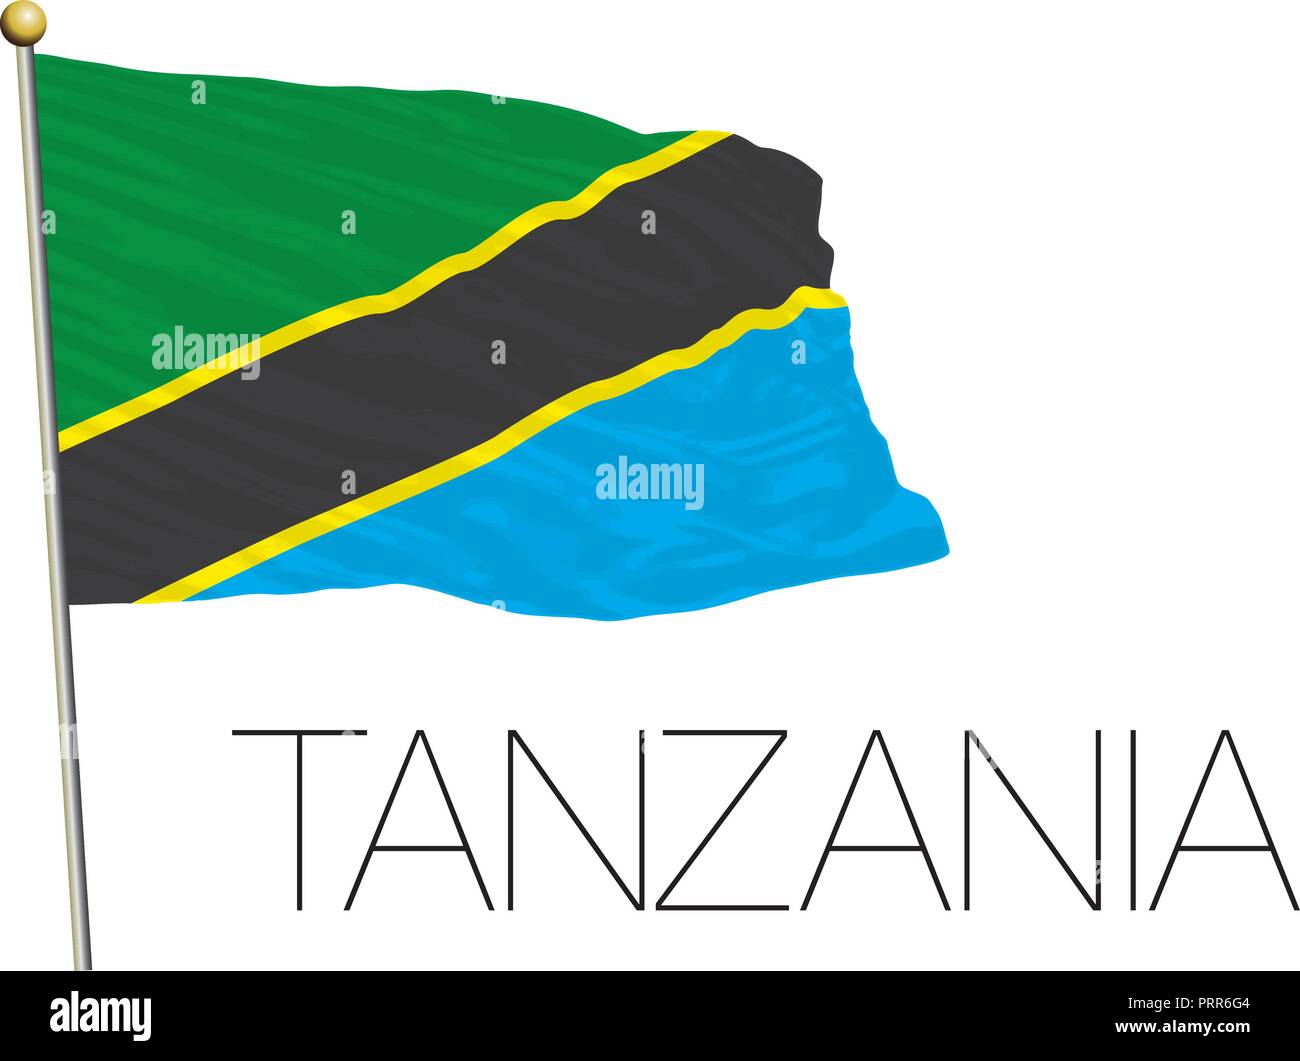 Tanzania official flag, vector illustration Stock Vector